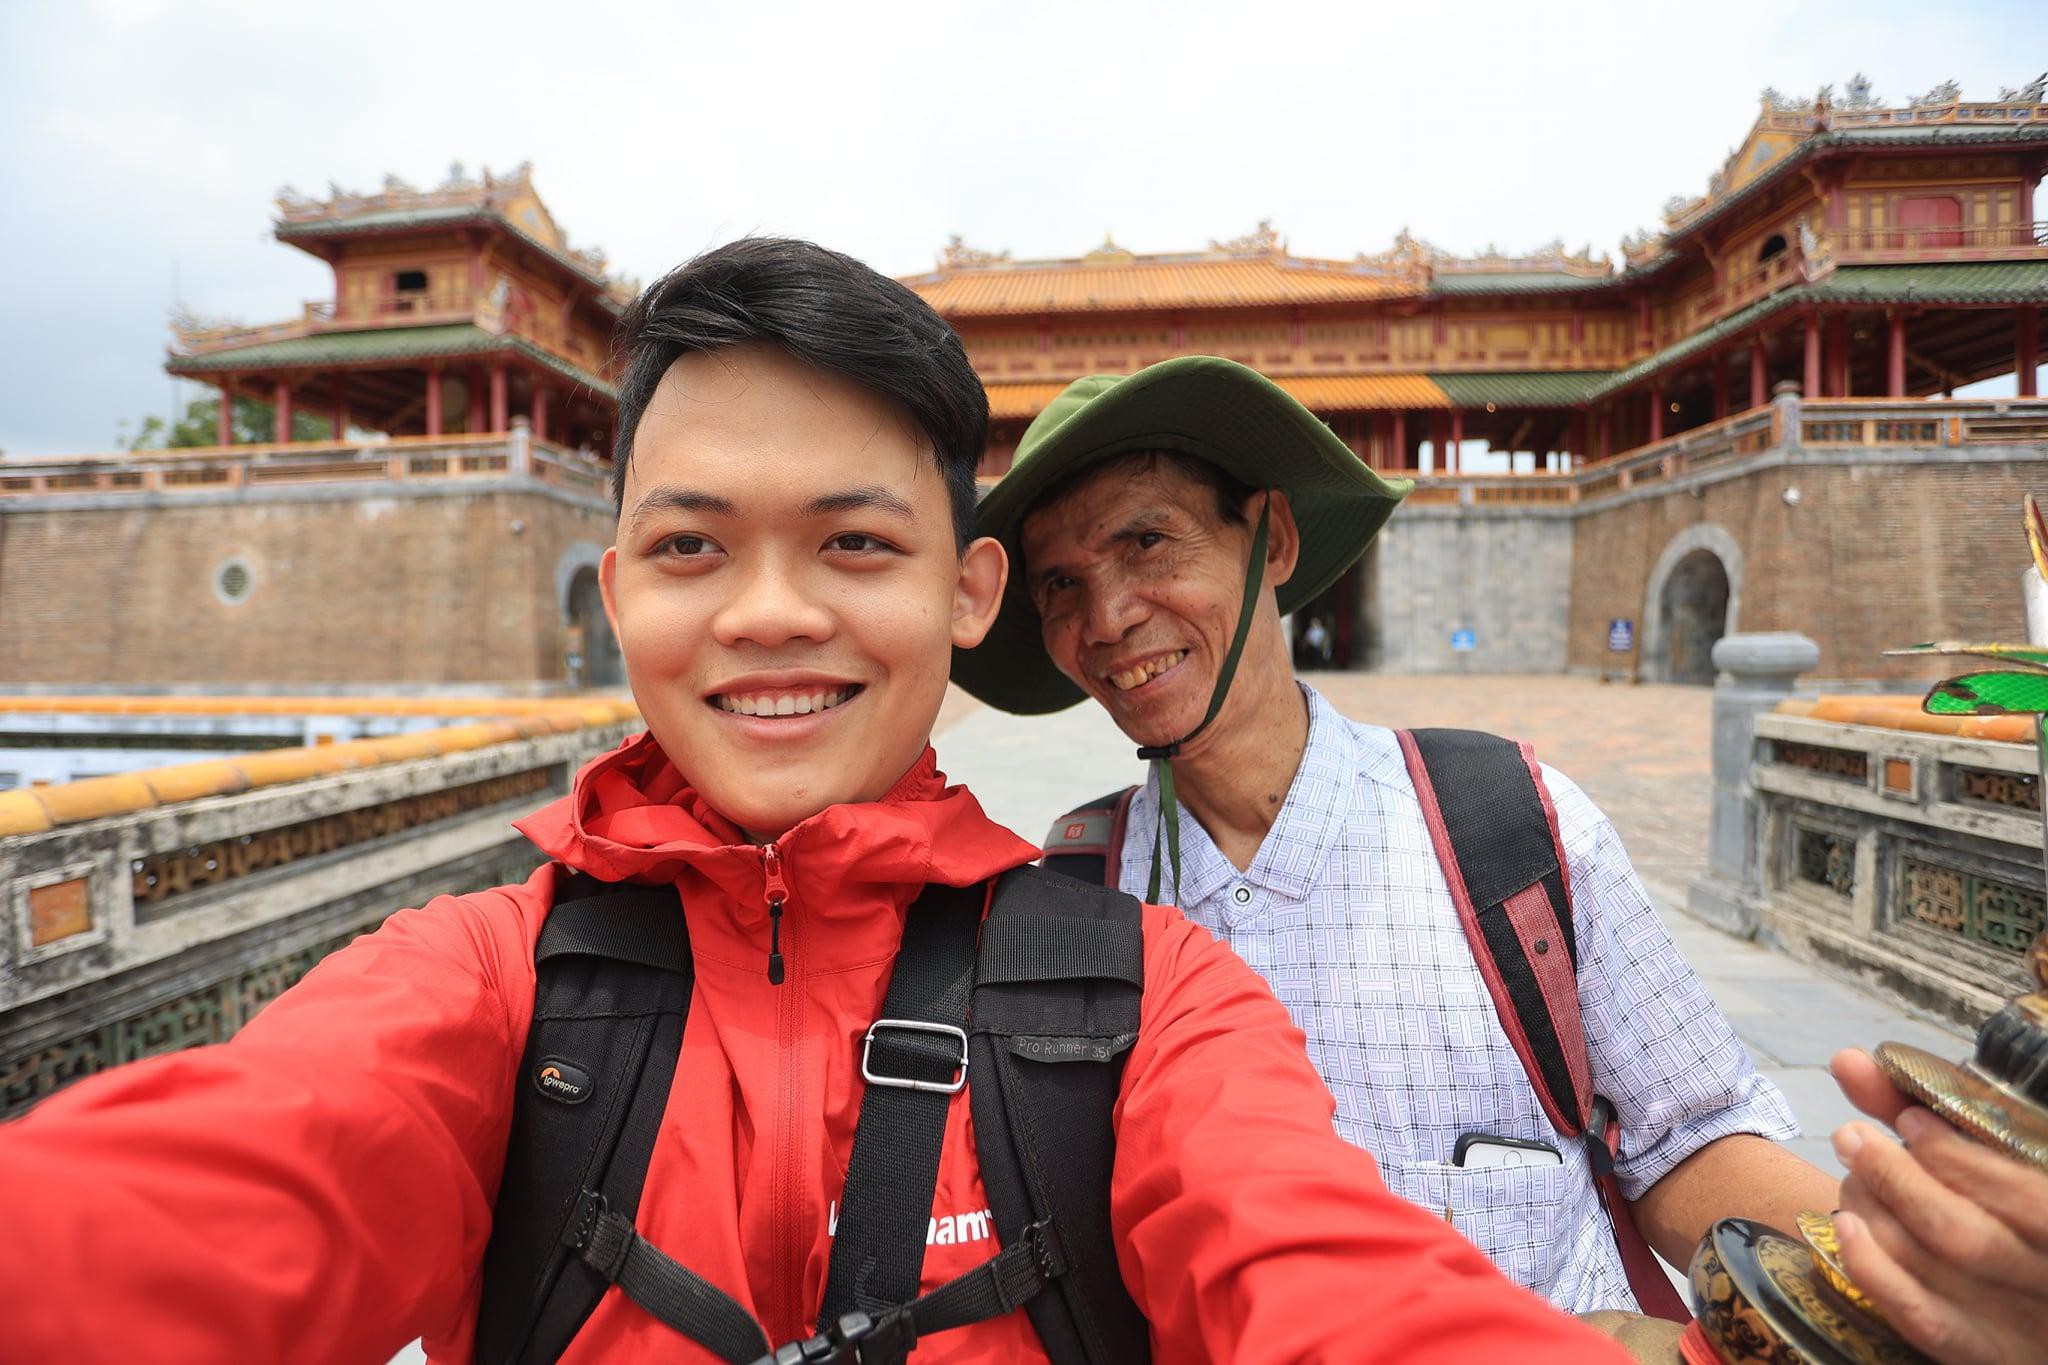 Hành trình xuyên Việt xúc động của chàng thanh niên 9x cùng ‘bạn của ông nội’ ảnh 5